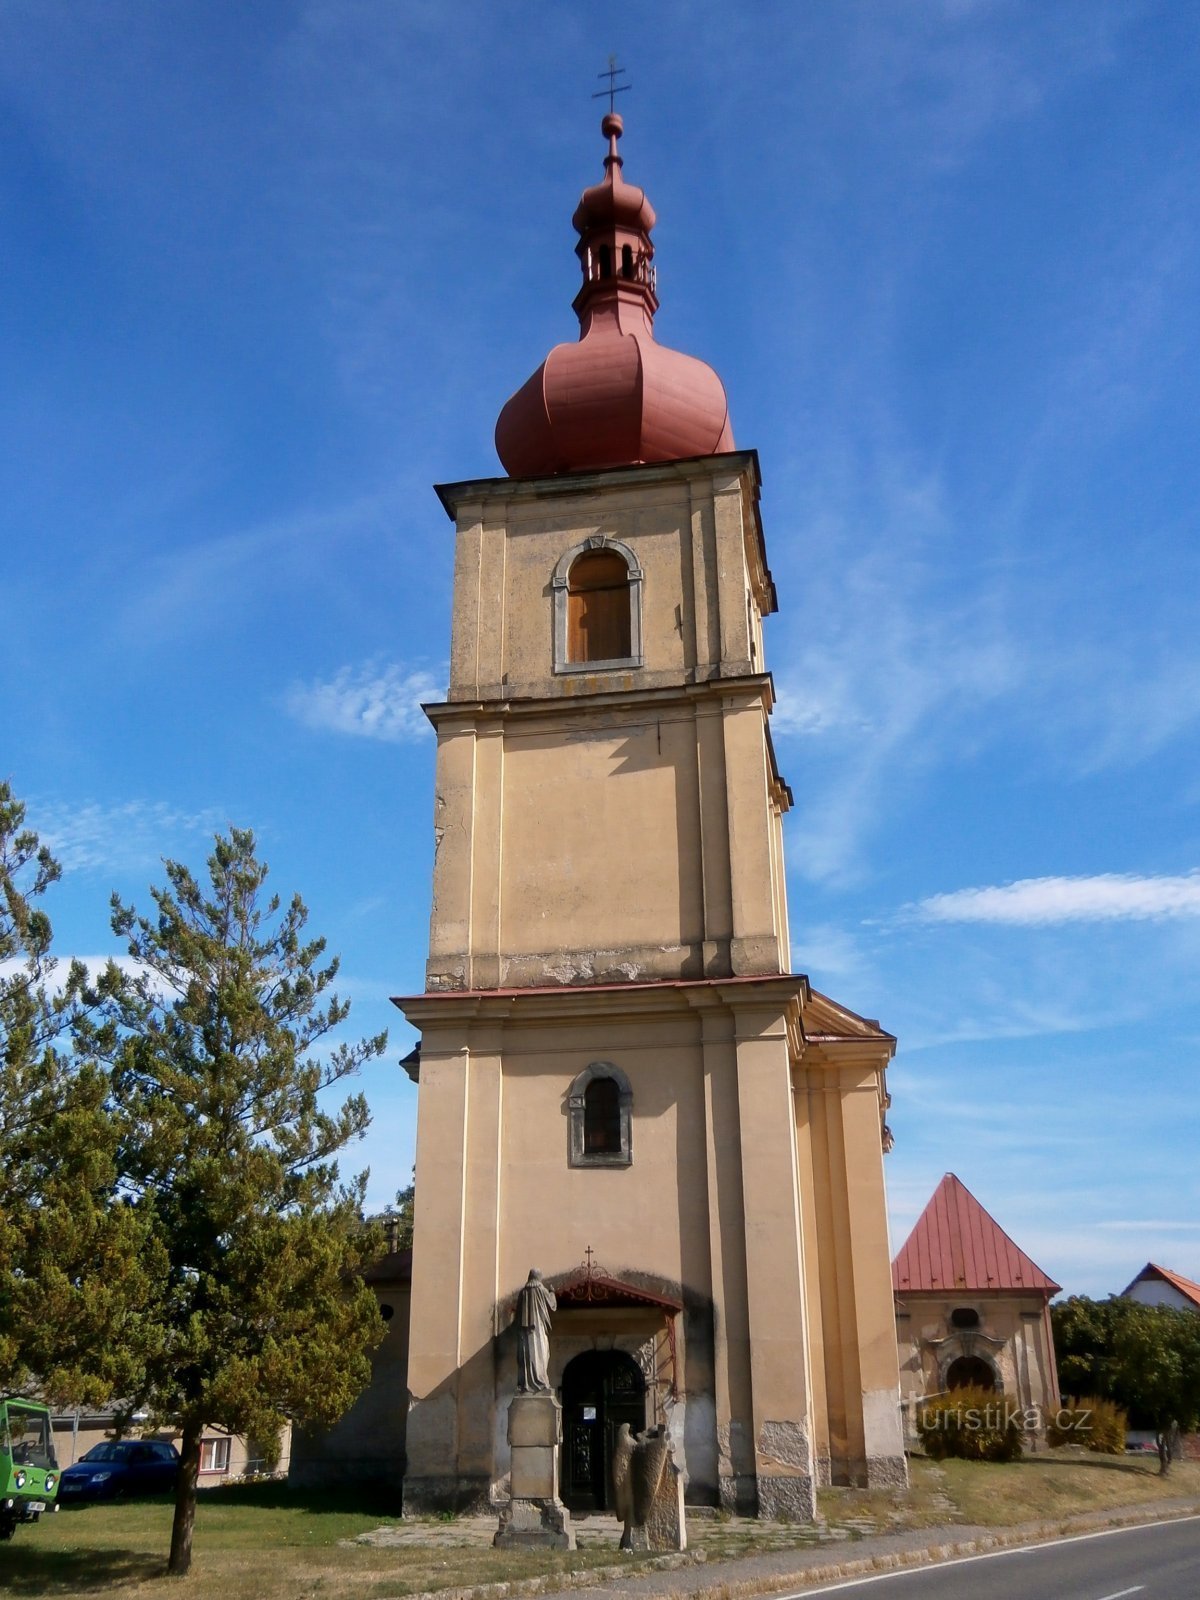 Église de St. Jiljí, abbé (Chvalkovice)